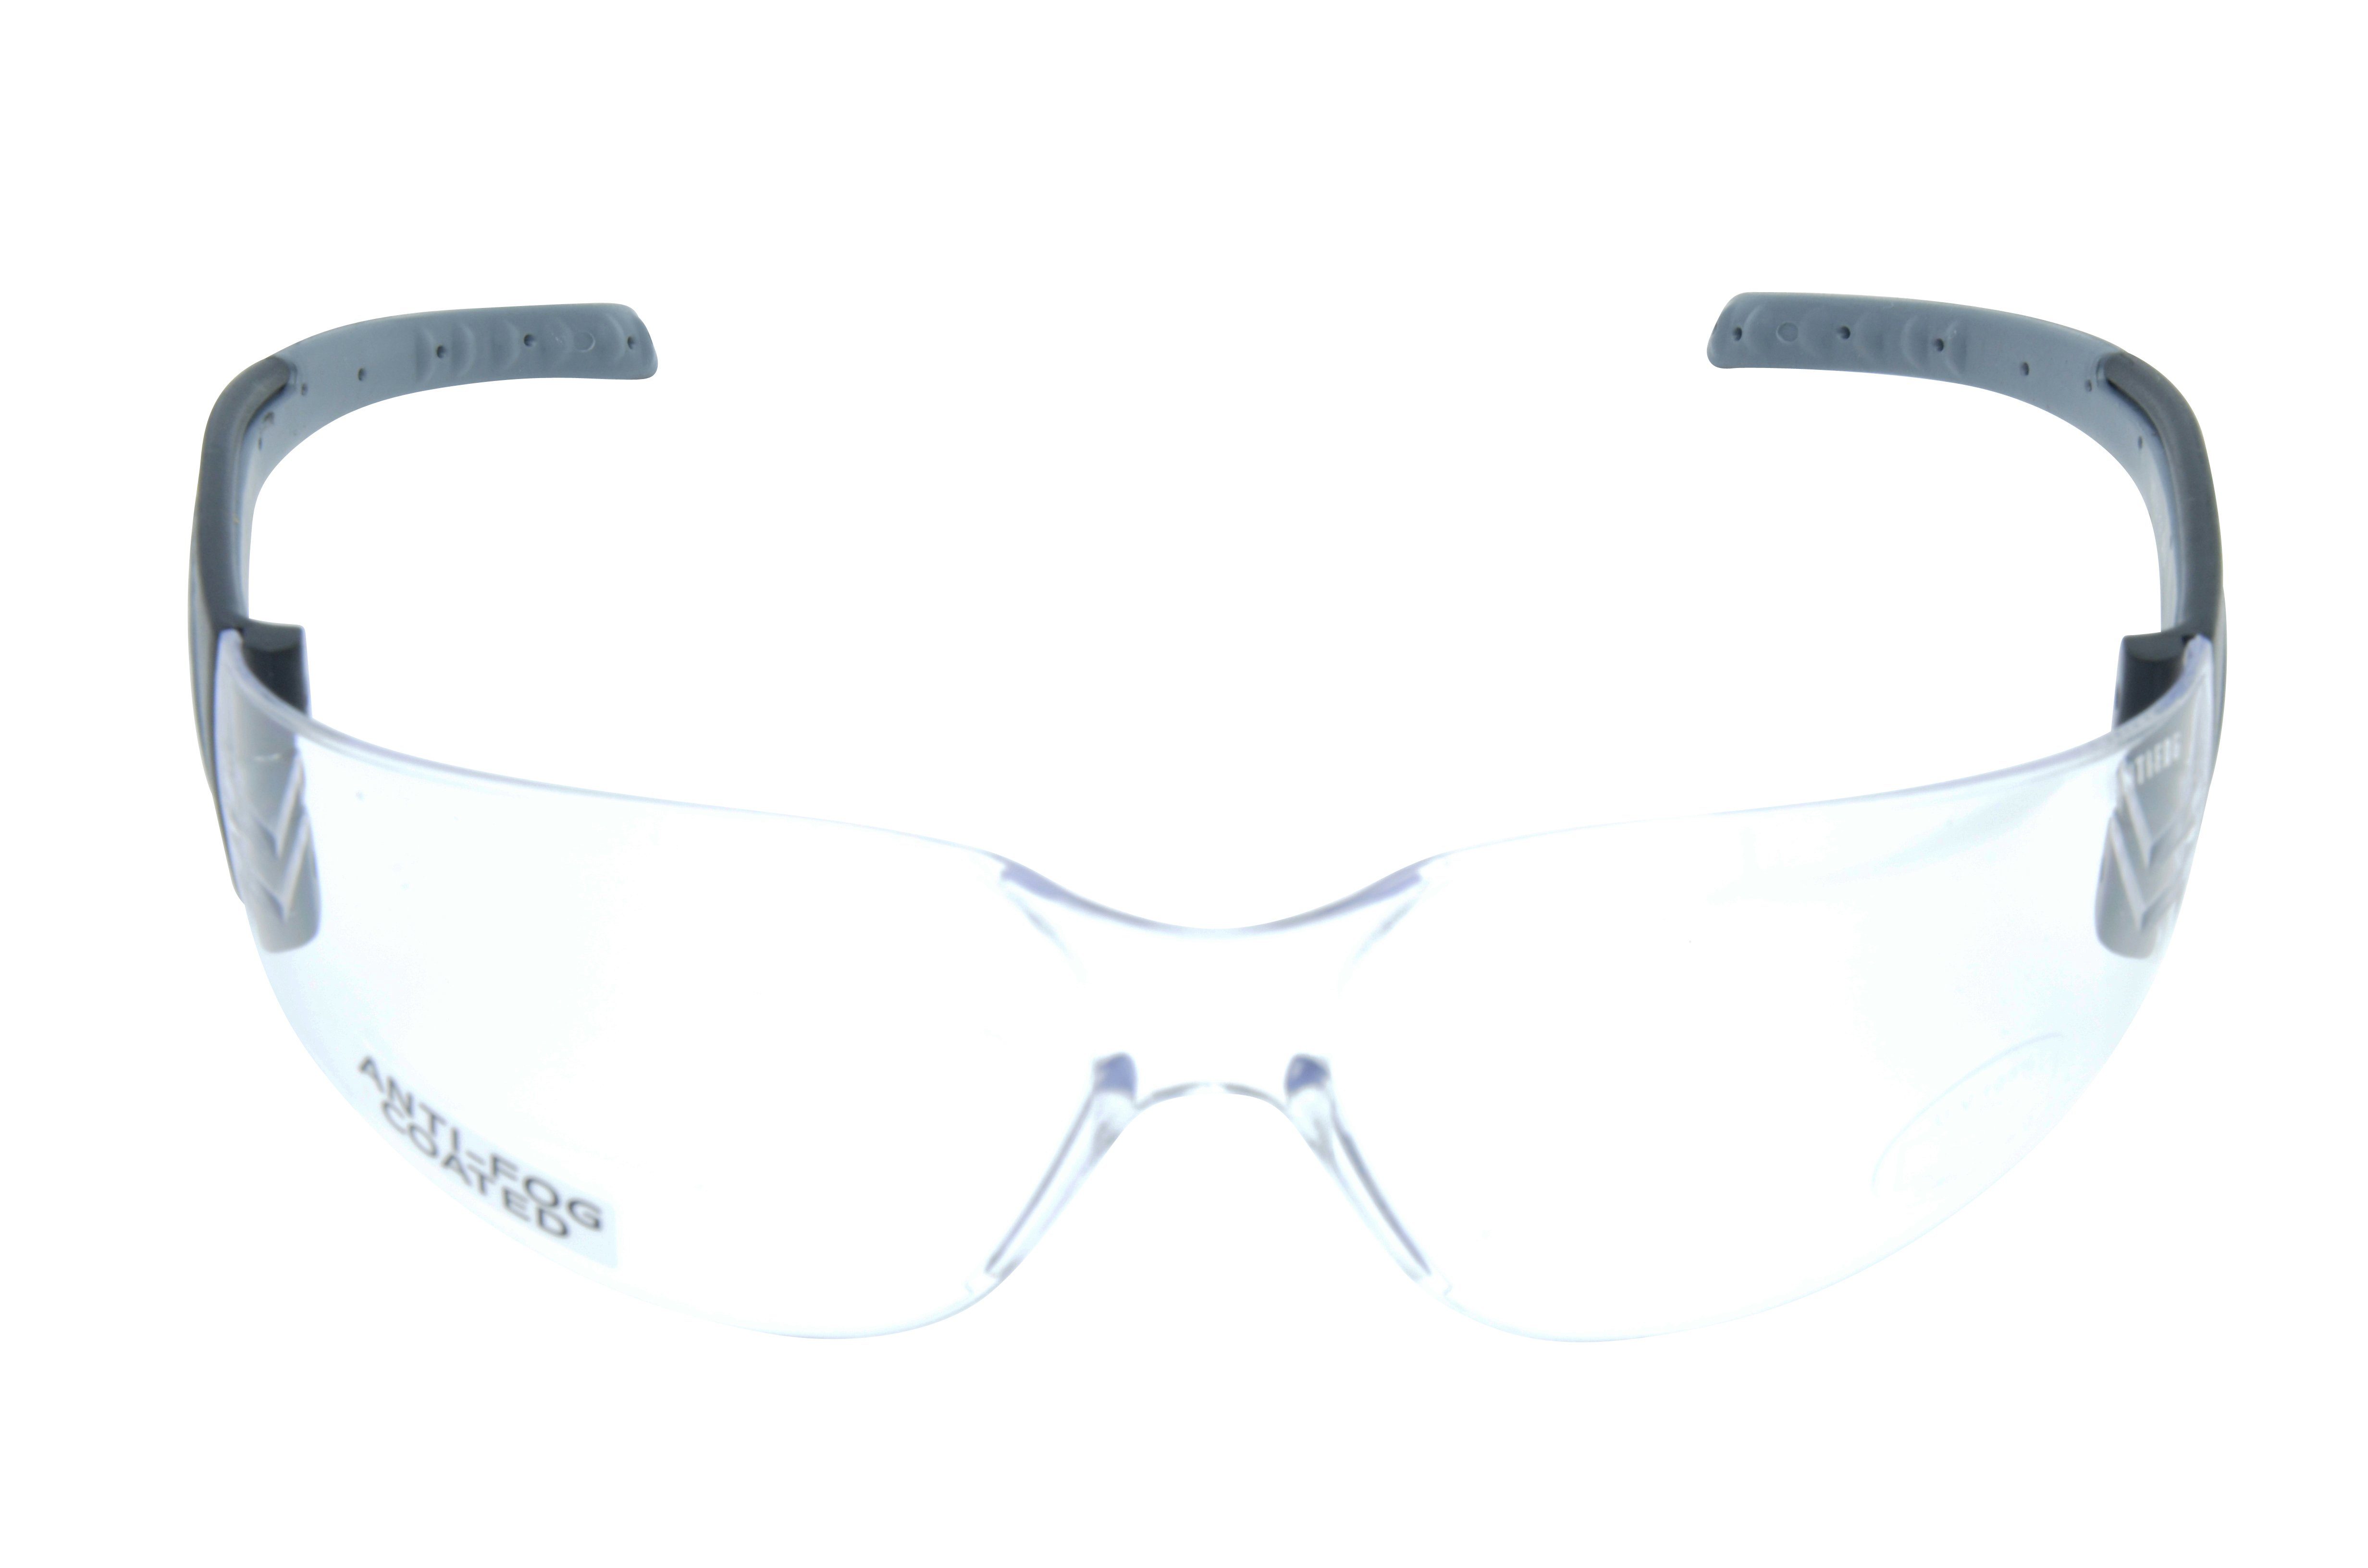 Gamswild brau, ANTIFOG Skibrille Herren grau, Sportbrille Fahrradbrille WS7122 Unisex, orange, transparent Sonnenbrille Damen